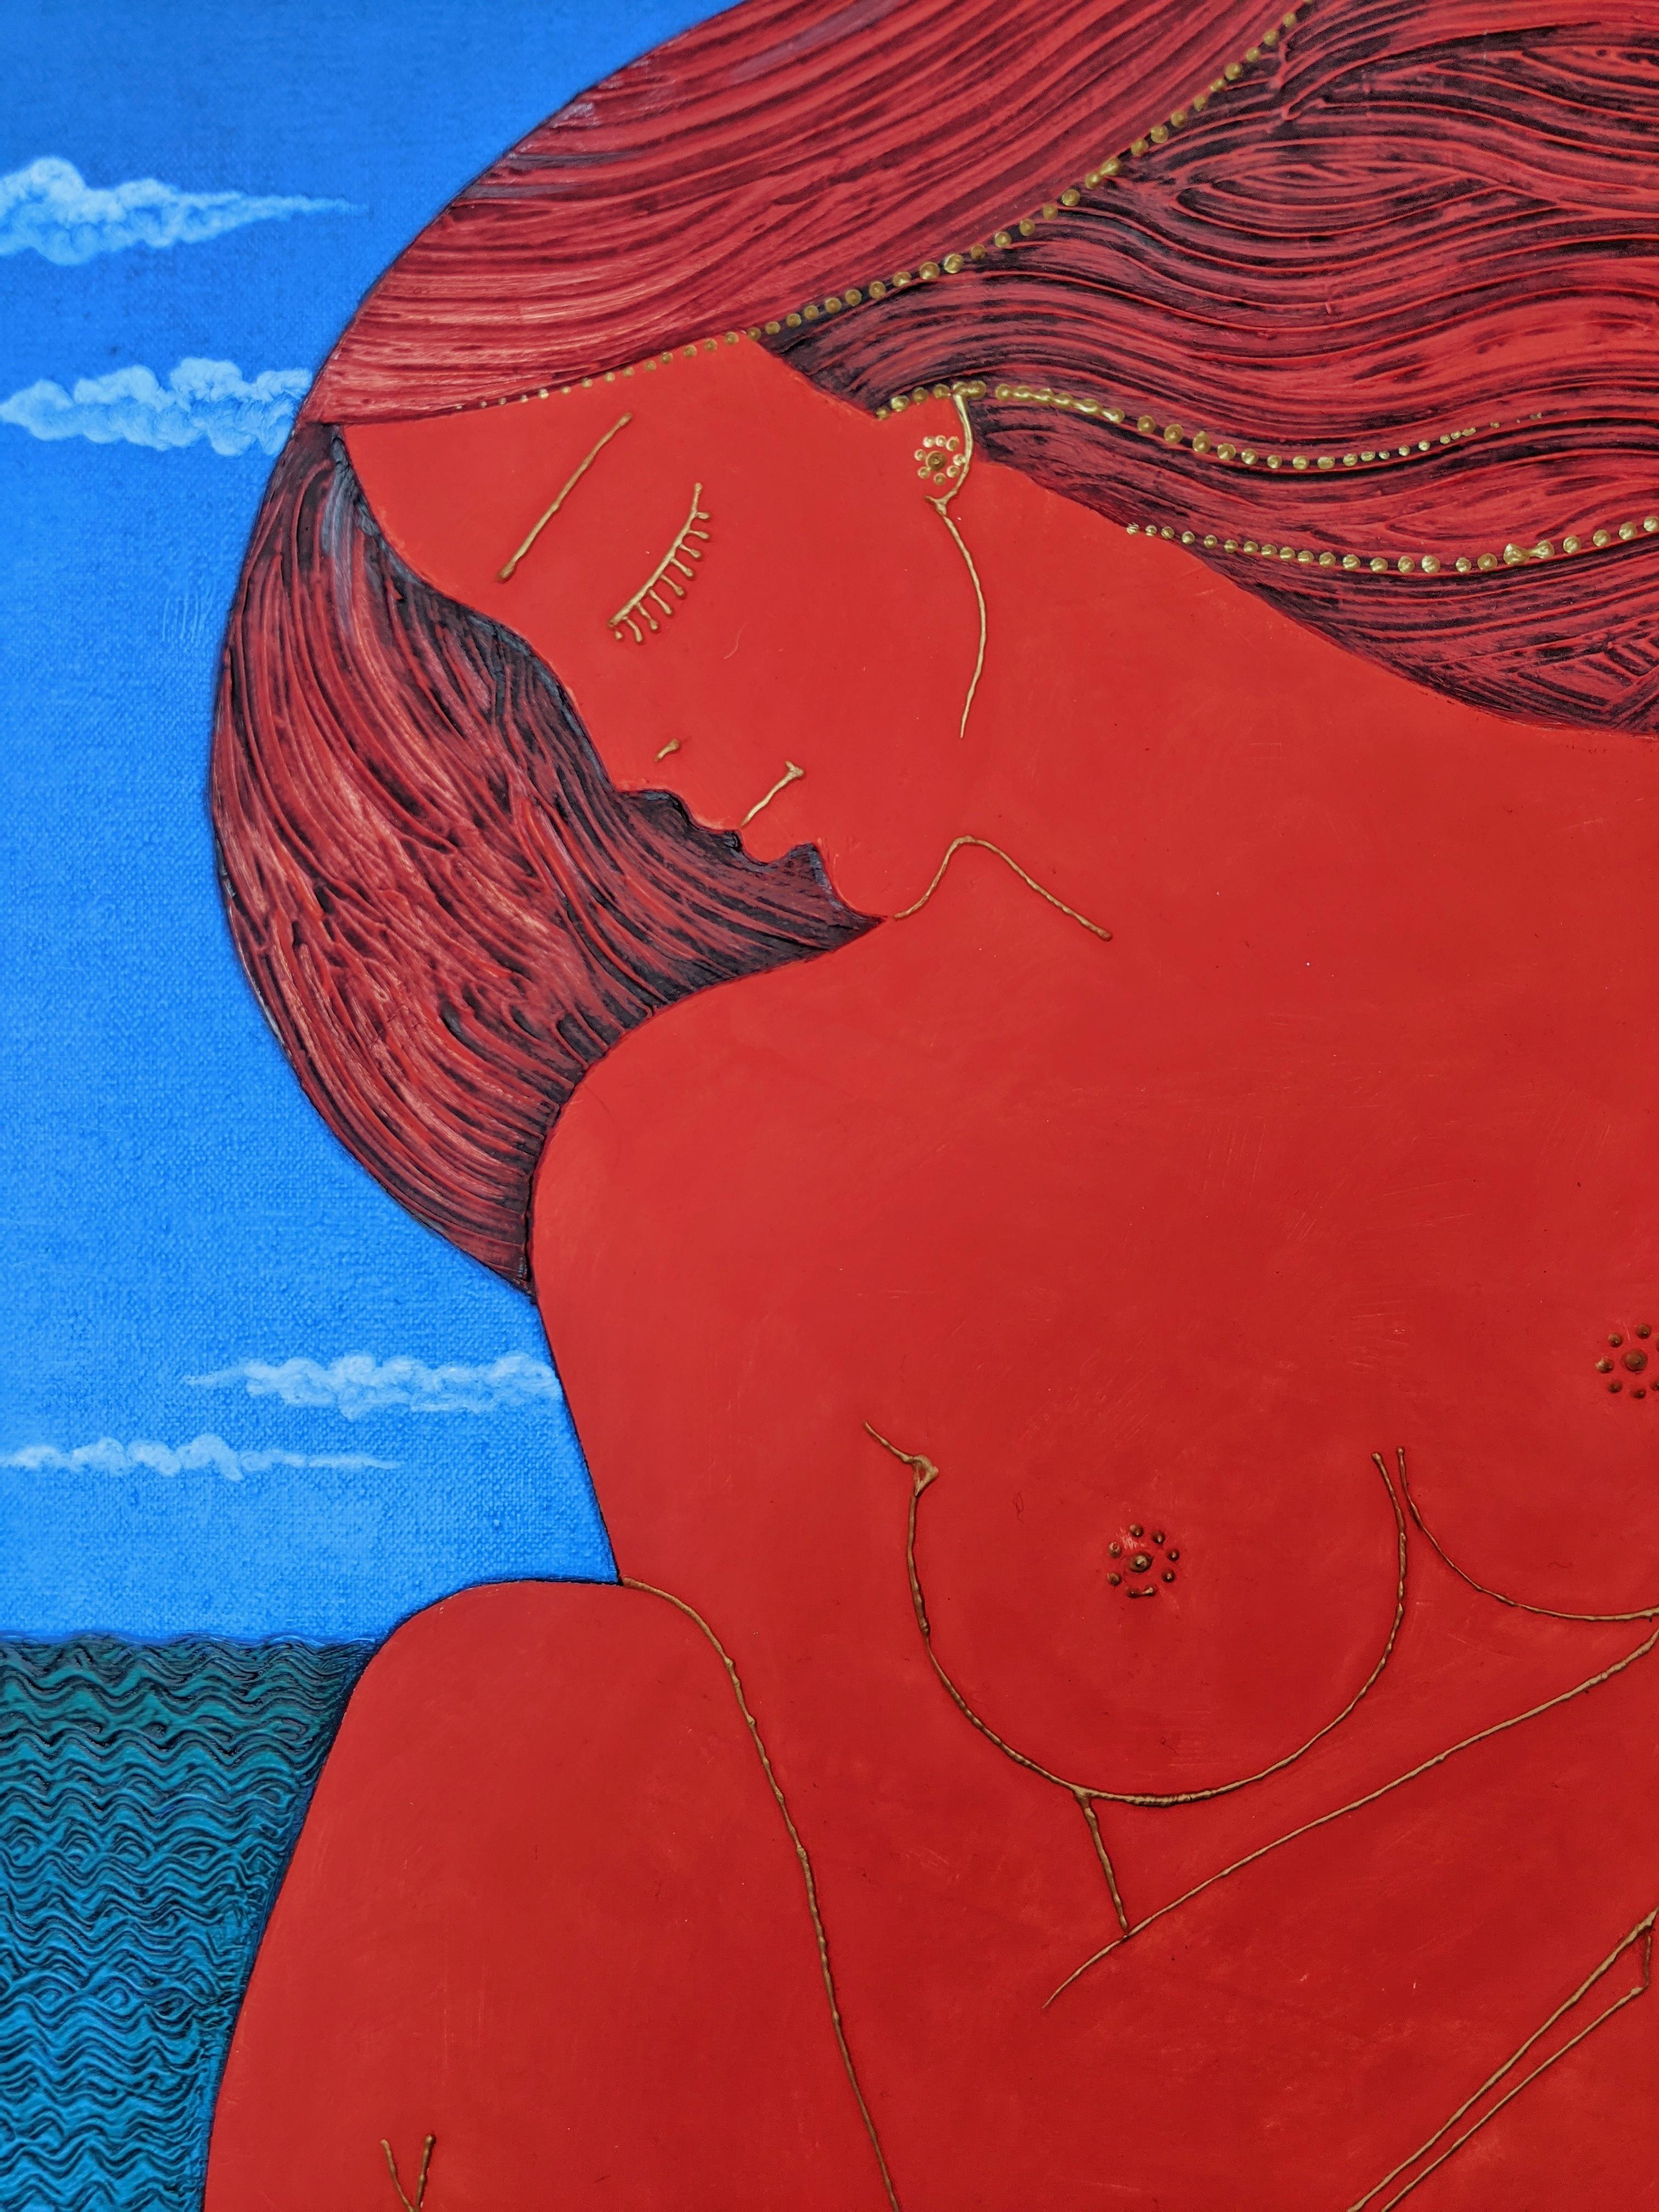 Sommer - Ein figuratives Aktgemälde Blattgold Blau Grau Braun Rot – Painting von Stefano Georges